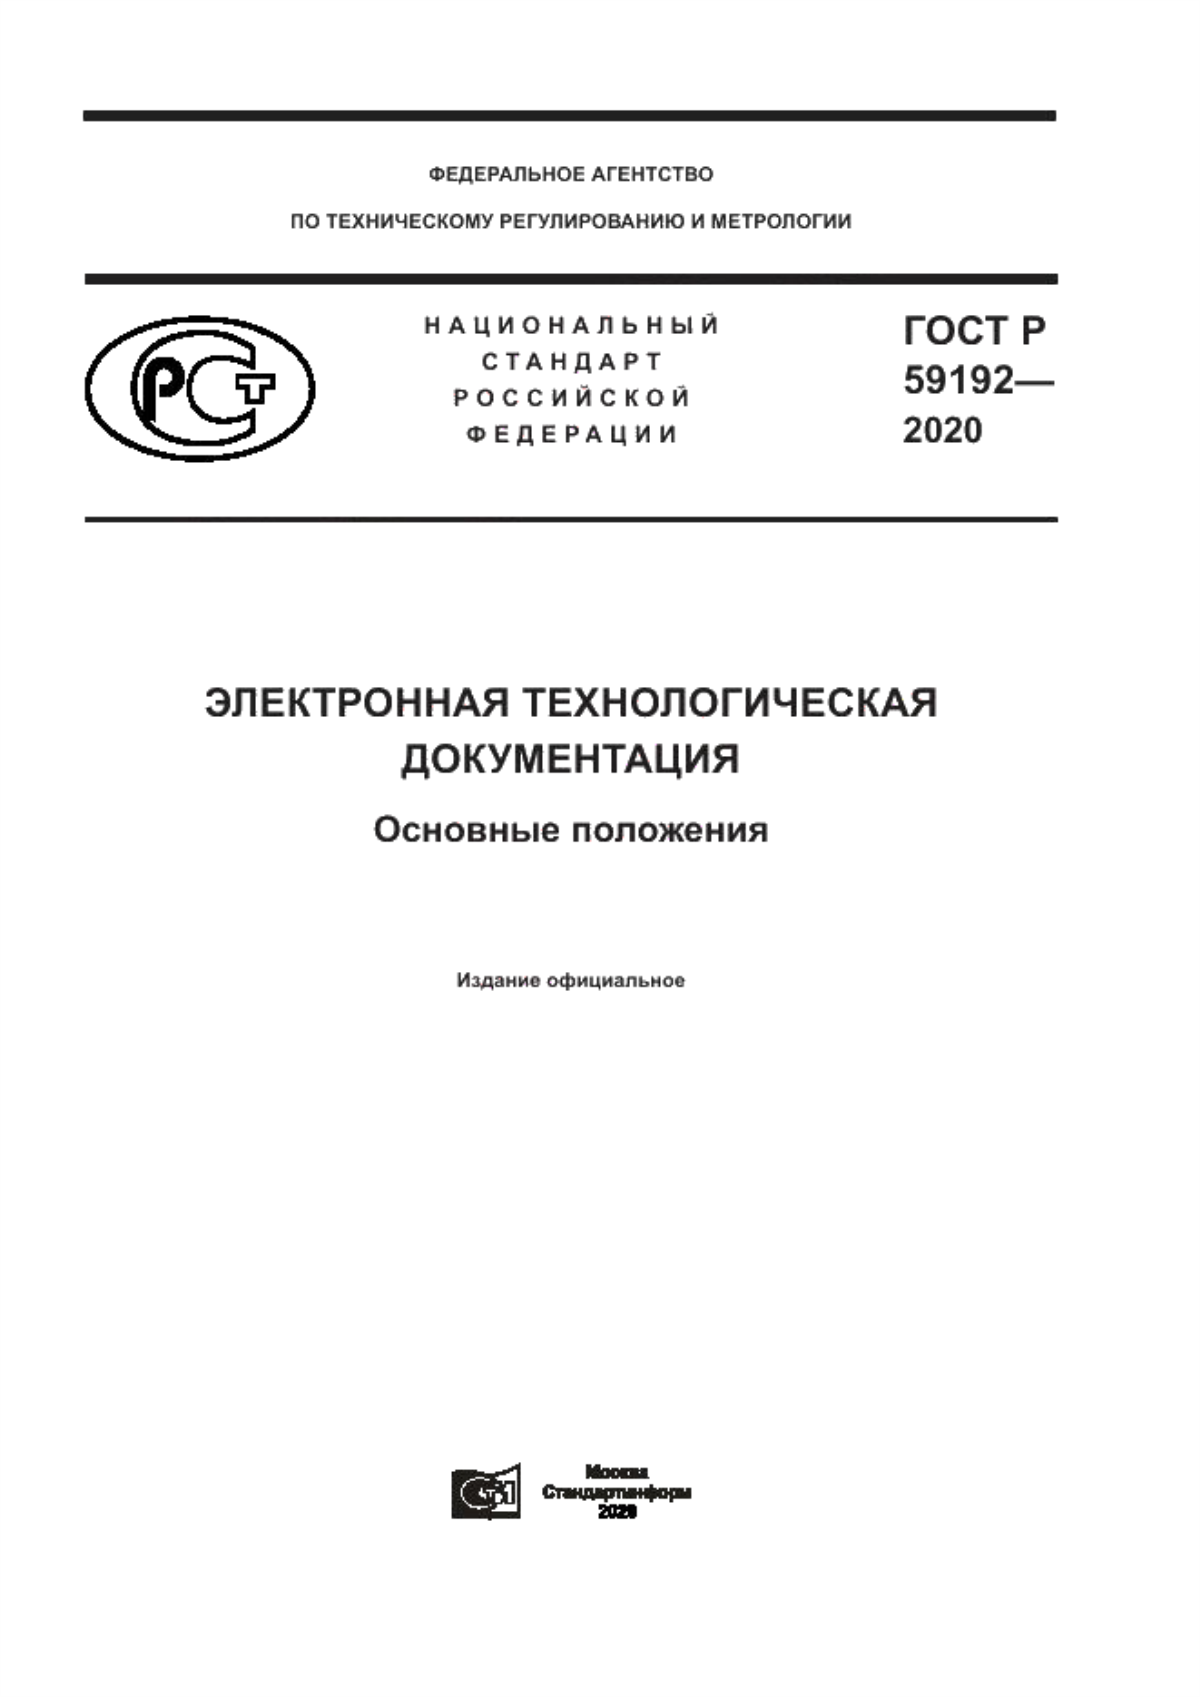 ГОСТ Р 59192-2020 Электронная технологическая документация. Основные положения